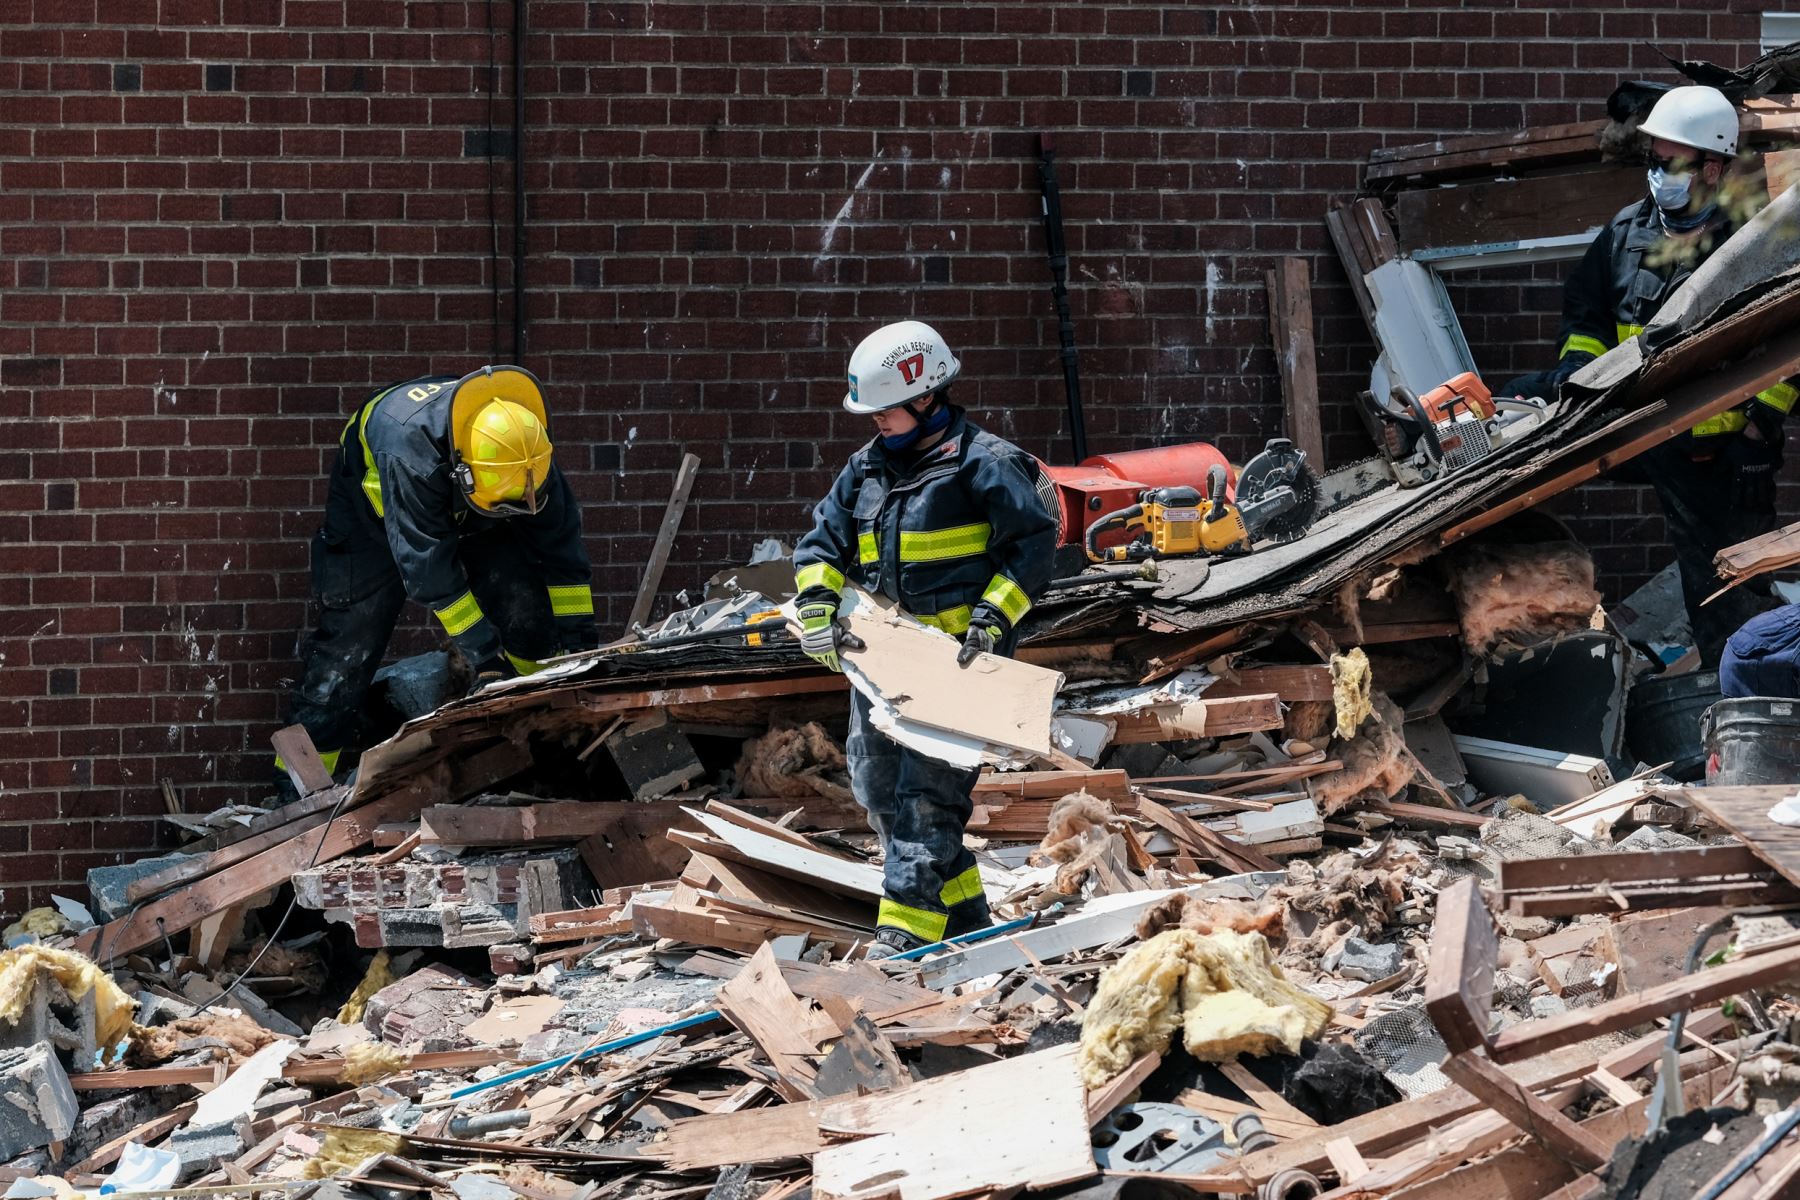 Los socorristas buscan sobrevivientes en el lugar de una explosión en Baltimore, Maryland. Los primeros informes indican que una fuga de gas pudo haber causado la explosión masiva que arrasó tres casas, causando múltiples heridos y al menos una muerte. 
Foto: AFP